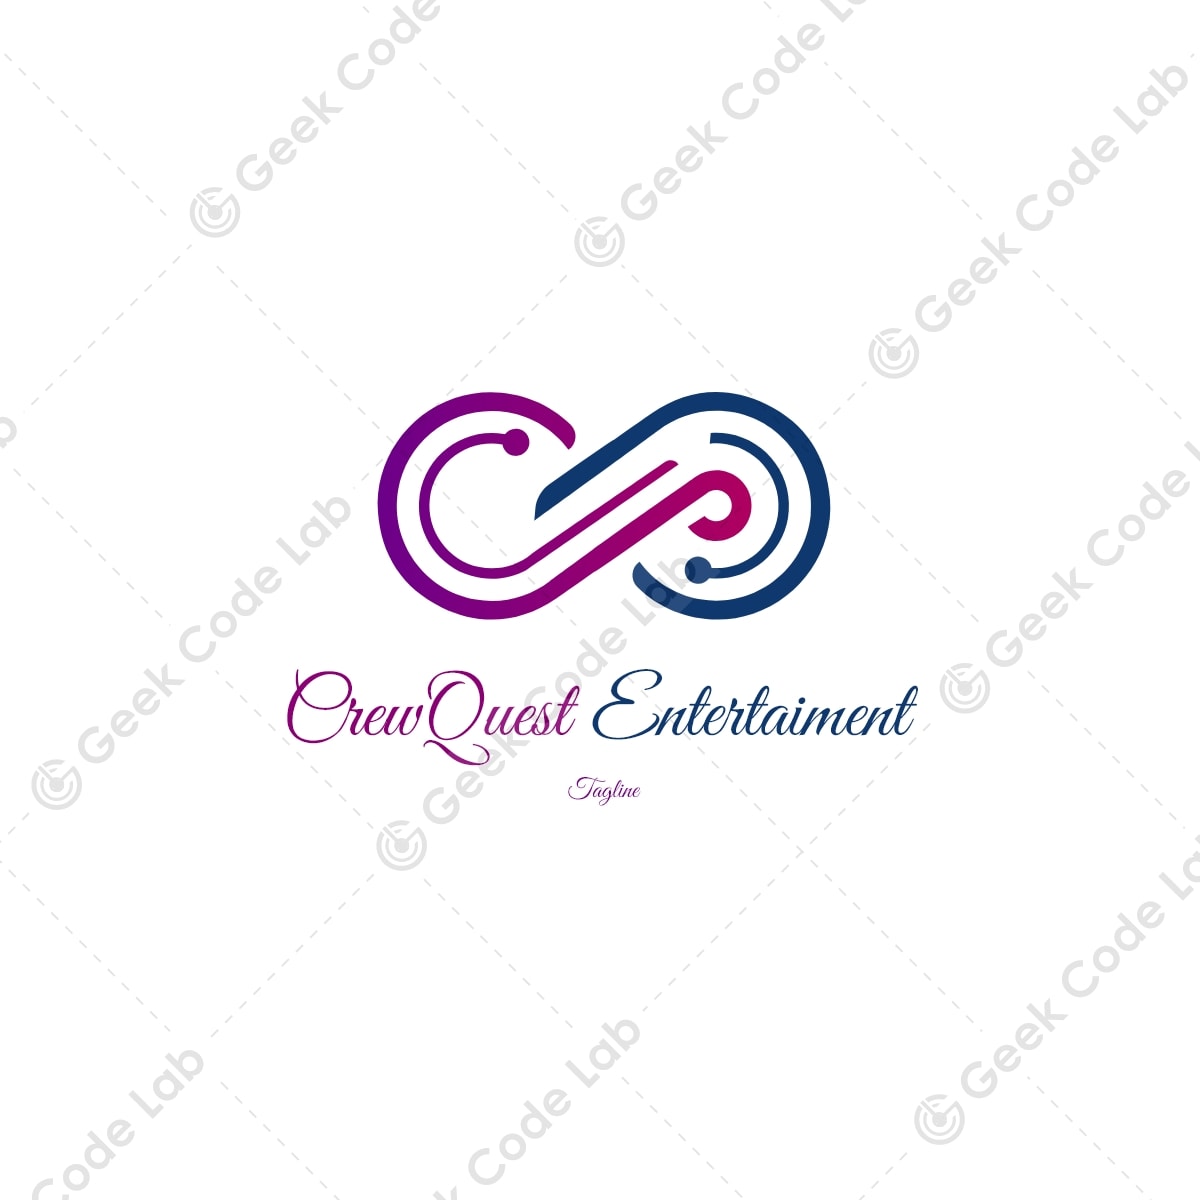 CrewQuest Entertainment